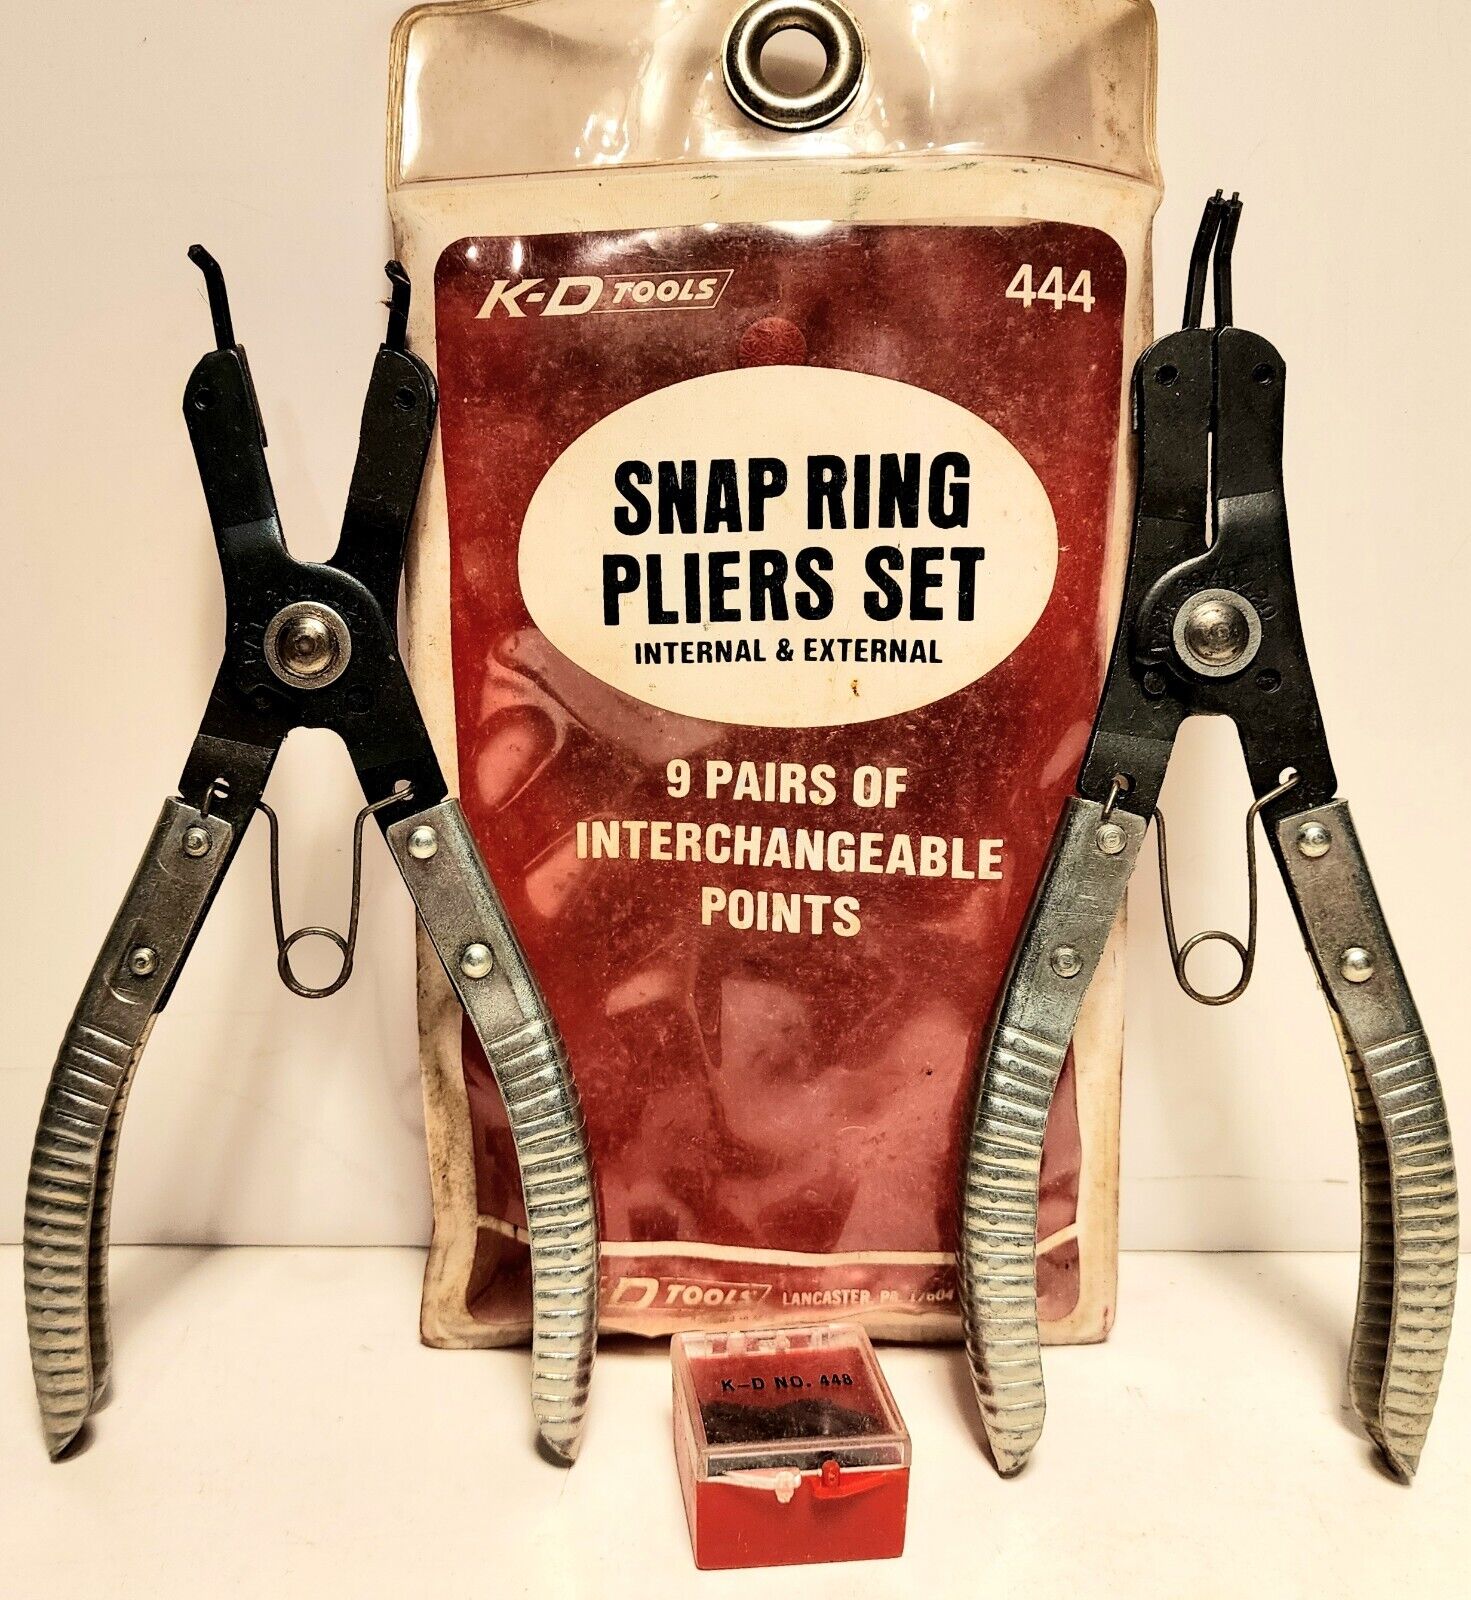 Vintage K-D Tools Snap Ring Pliers Set.  Original Packaging #444